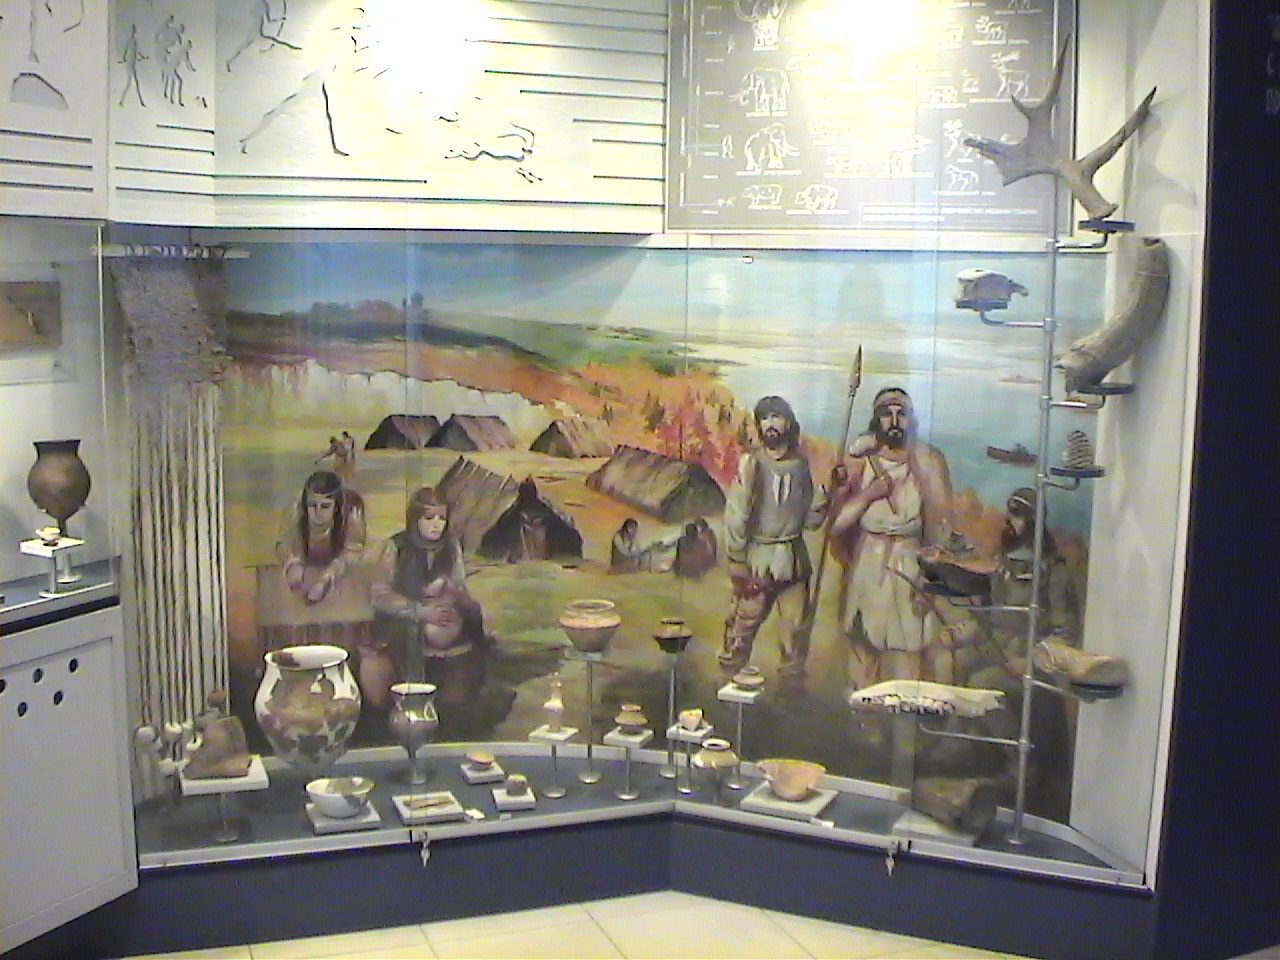 Археологический музей, Чигирин